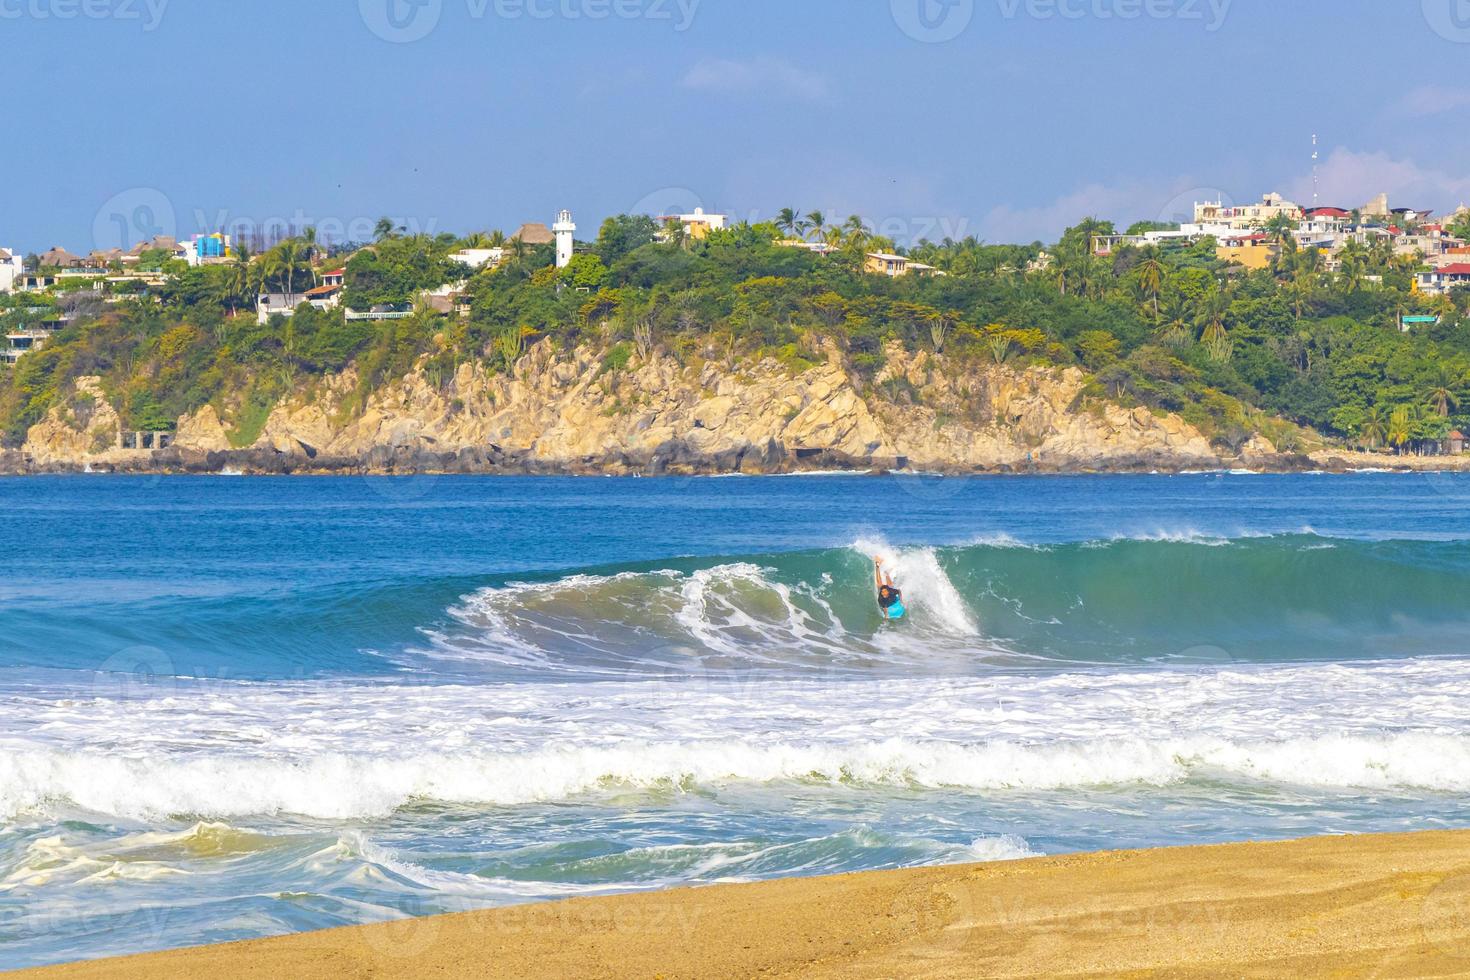 surfer surfen auf surfbrett auf hohen wellen in puerto escondido mexiko. foto